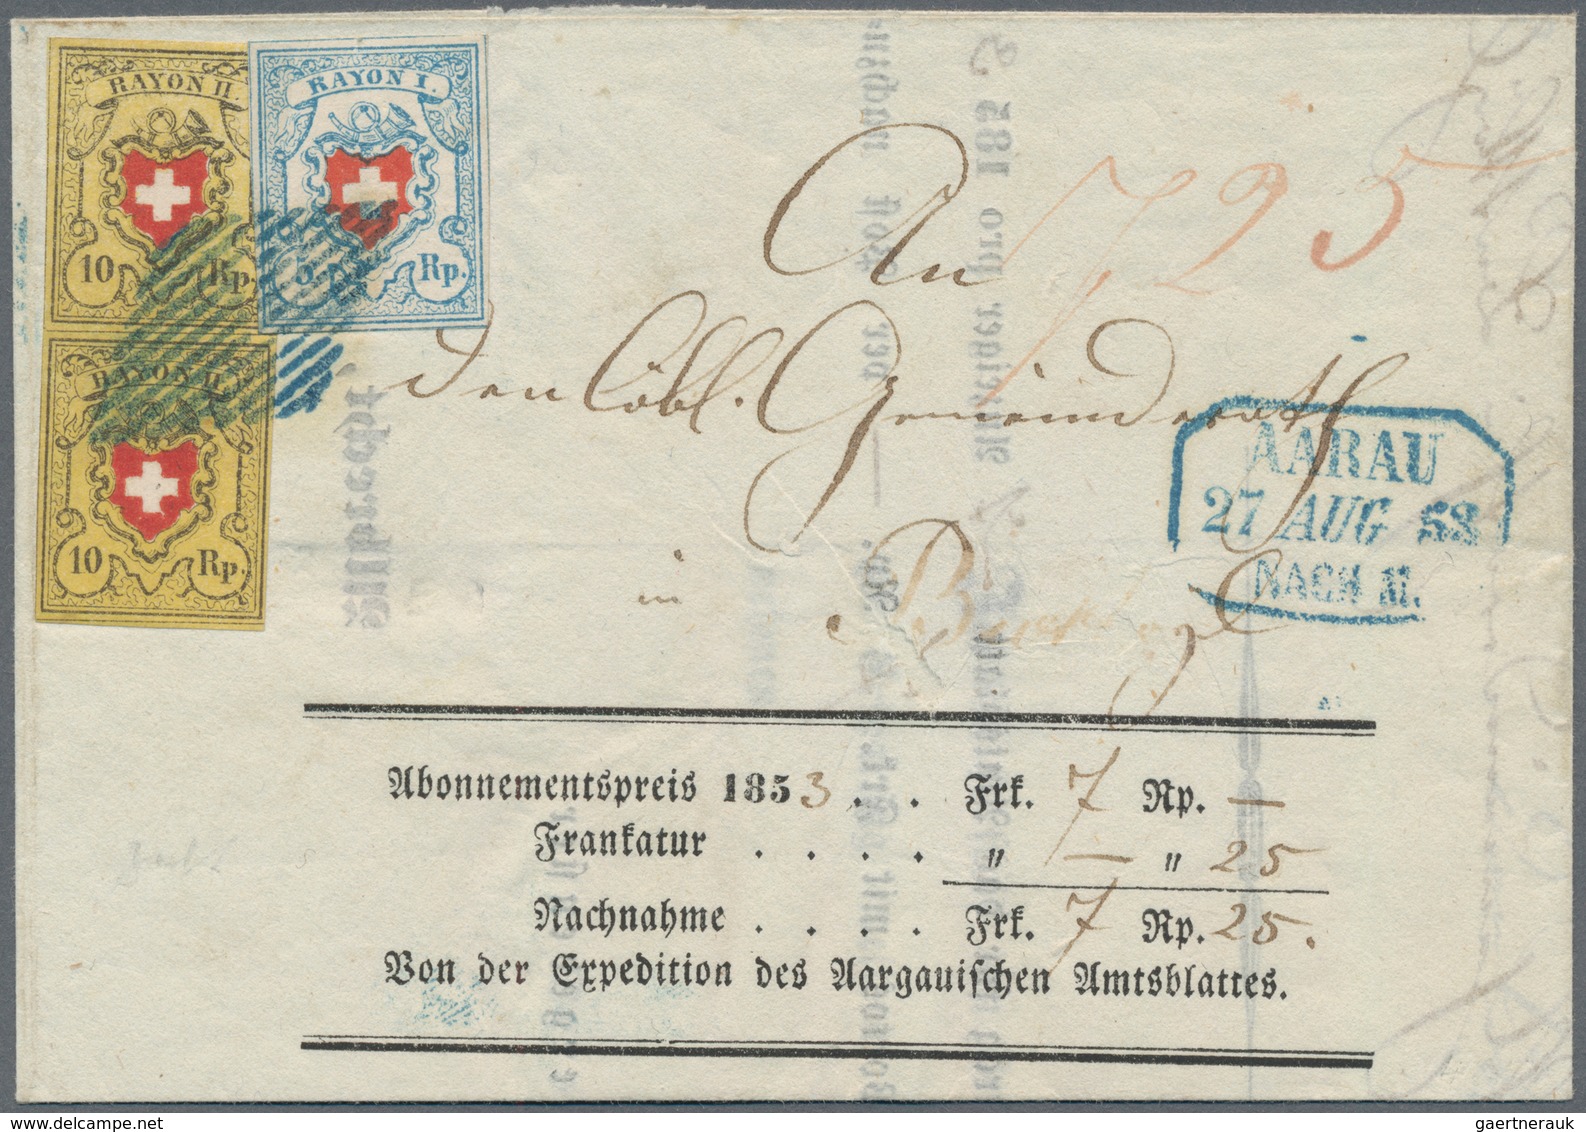 Schweiz: 1850/52: RAYON I - III, hochkarätige Partie von 18 Briefen und Belegen mit Einzel-, Bunt- u